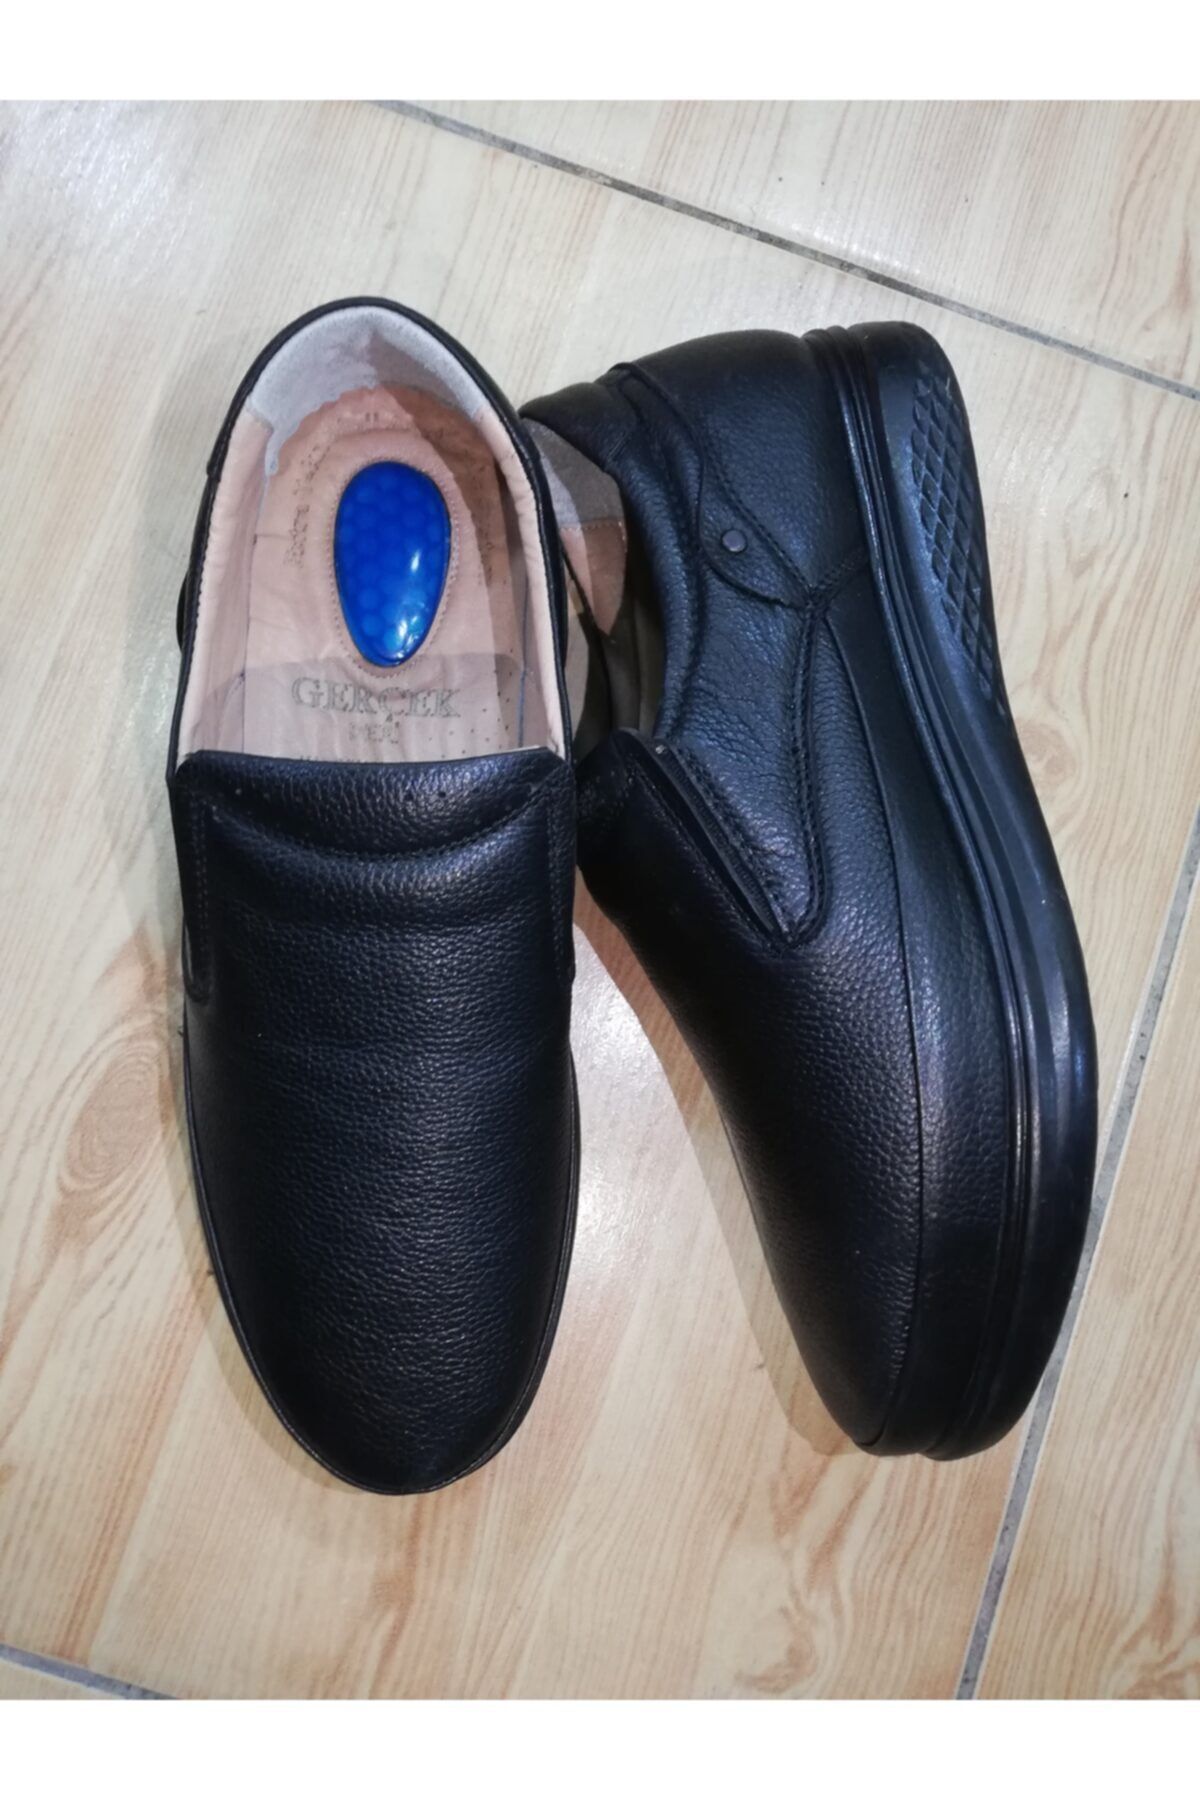 ÖZLEM AYAKKABI Erkek Deri Siyah Bağsız Jel Tabanlı Ortopedik Ayakkabı